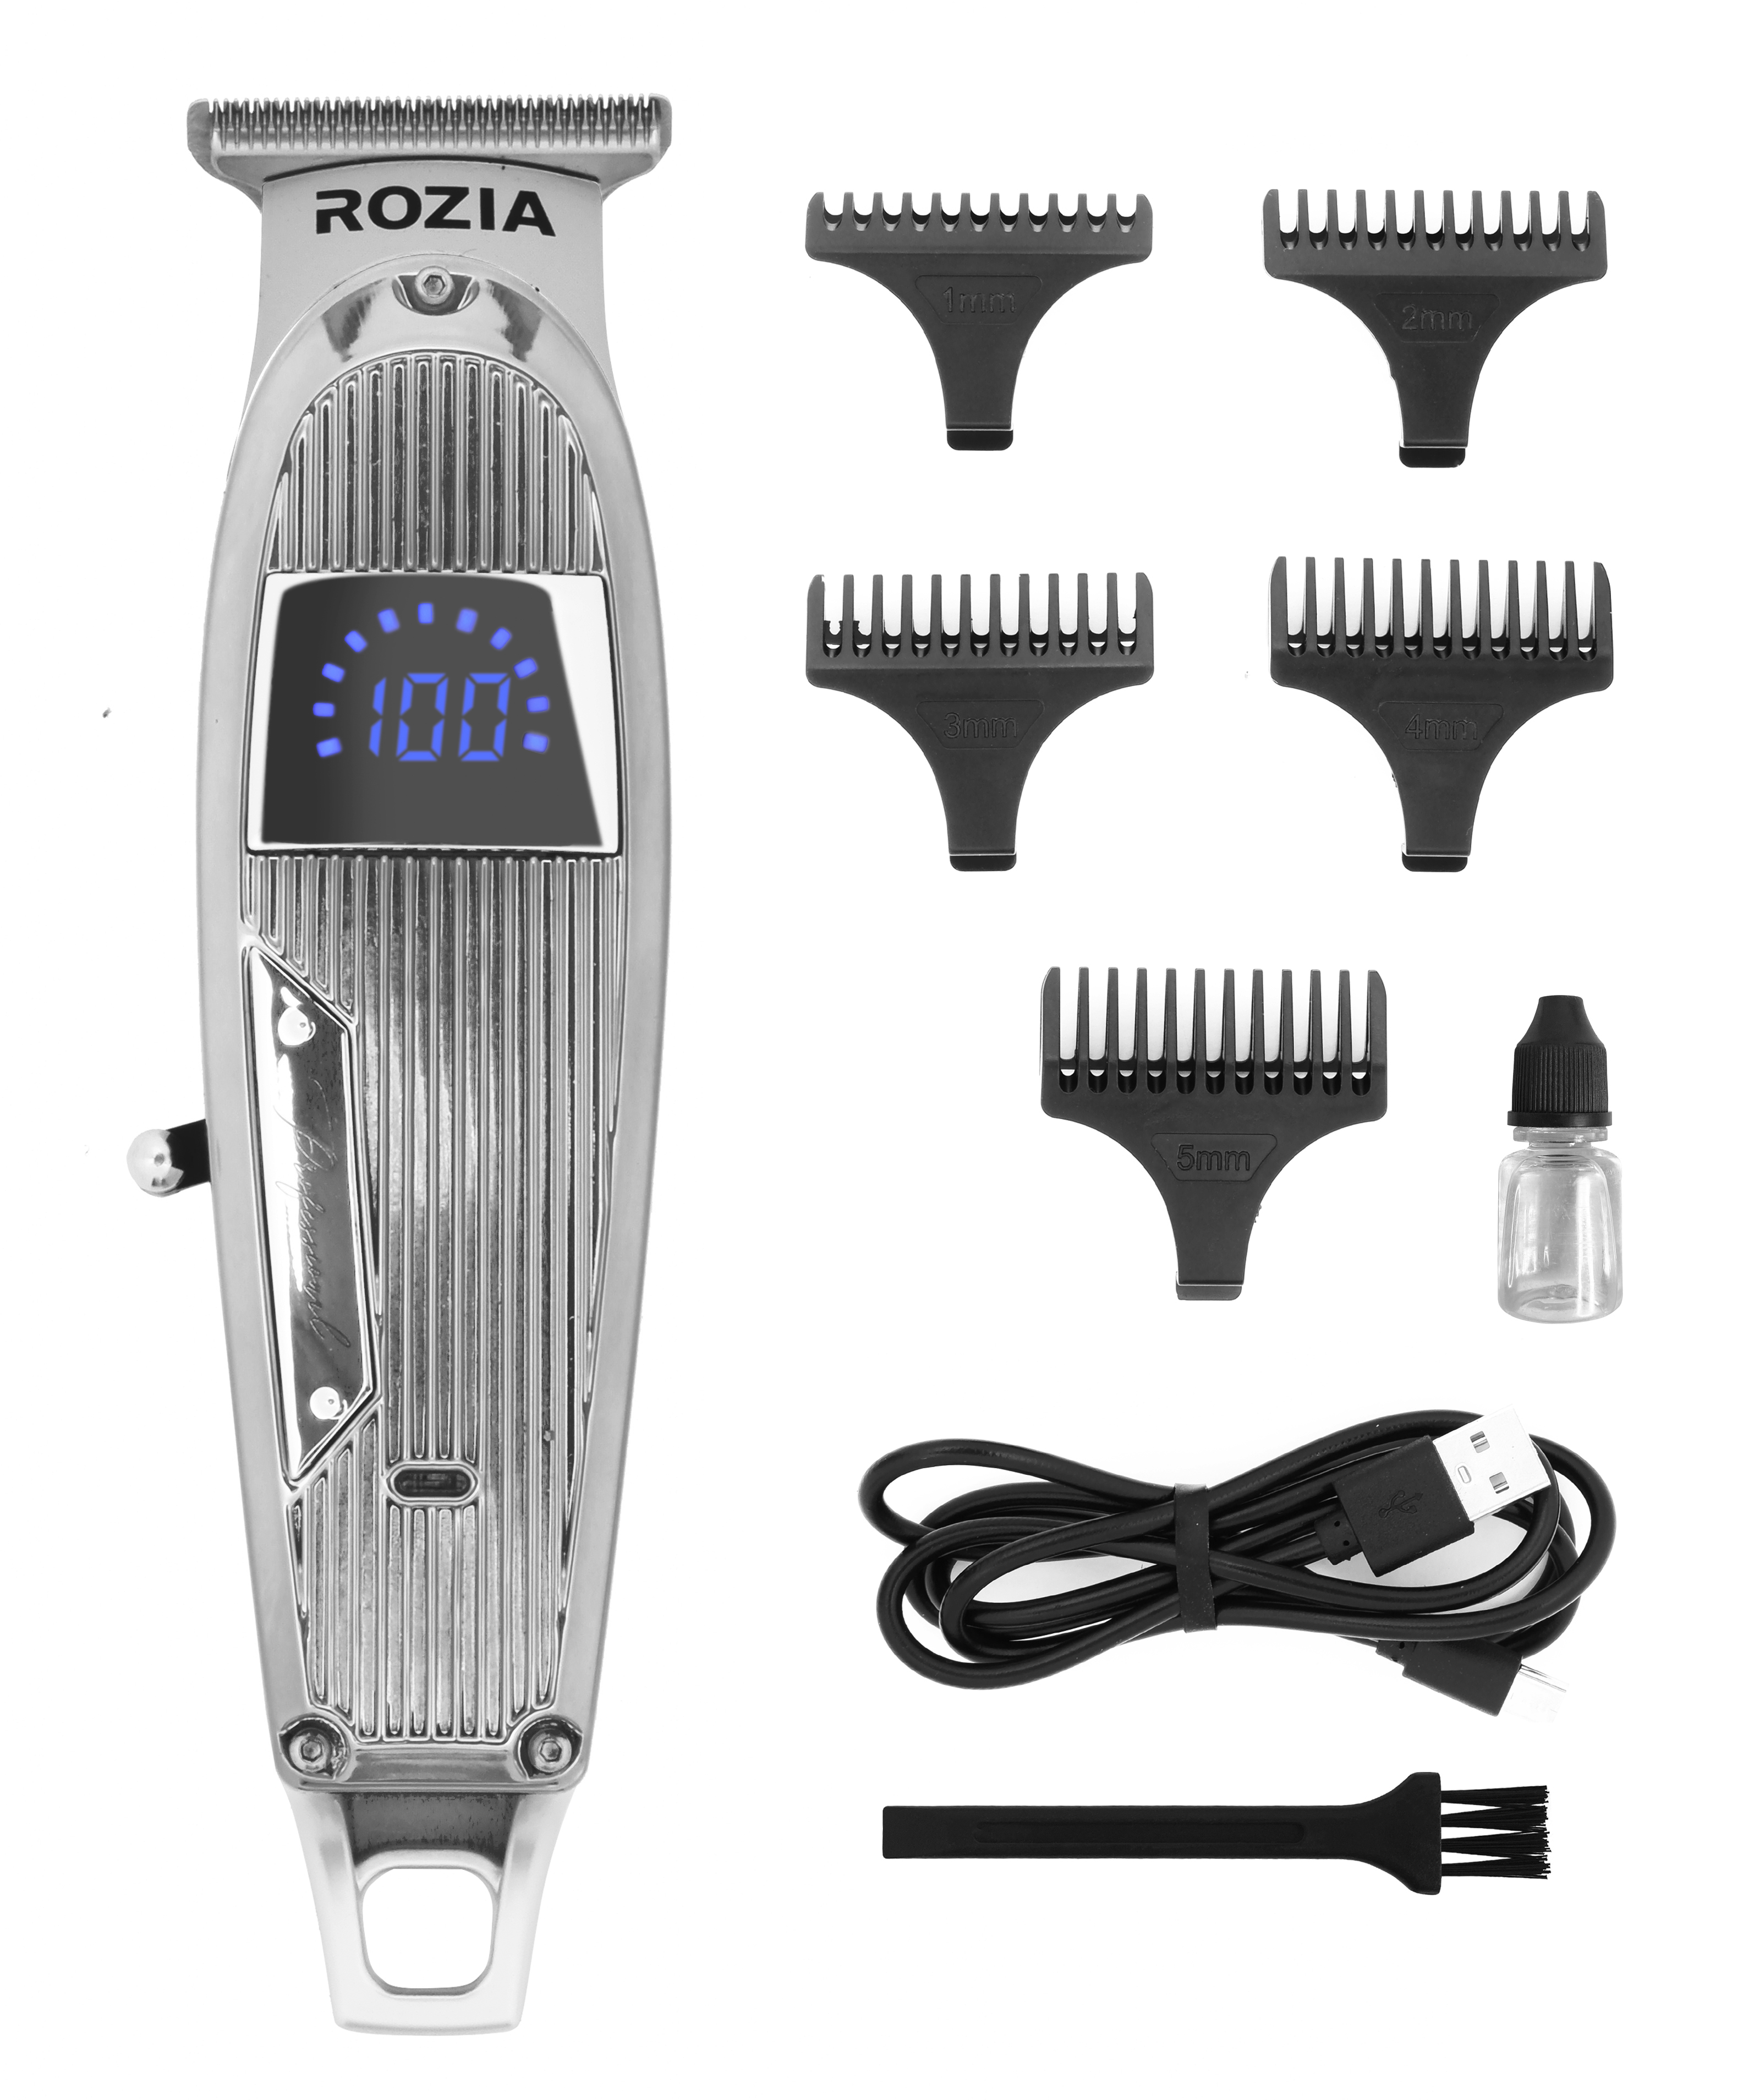 Машинка для стрижки волос Rozia HQ-321 серебристая машинка для стрижки волос rozia hq 321 серебристая